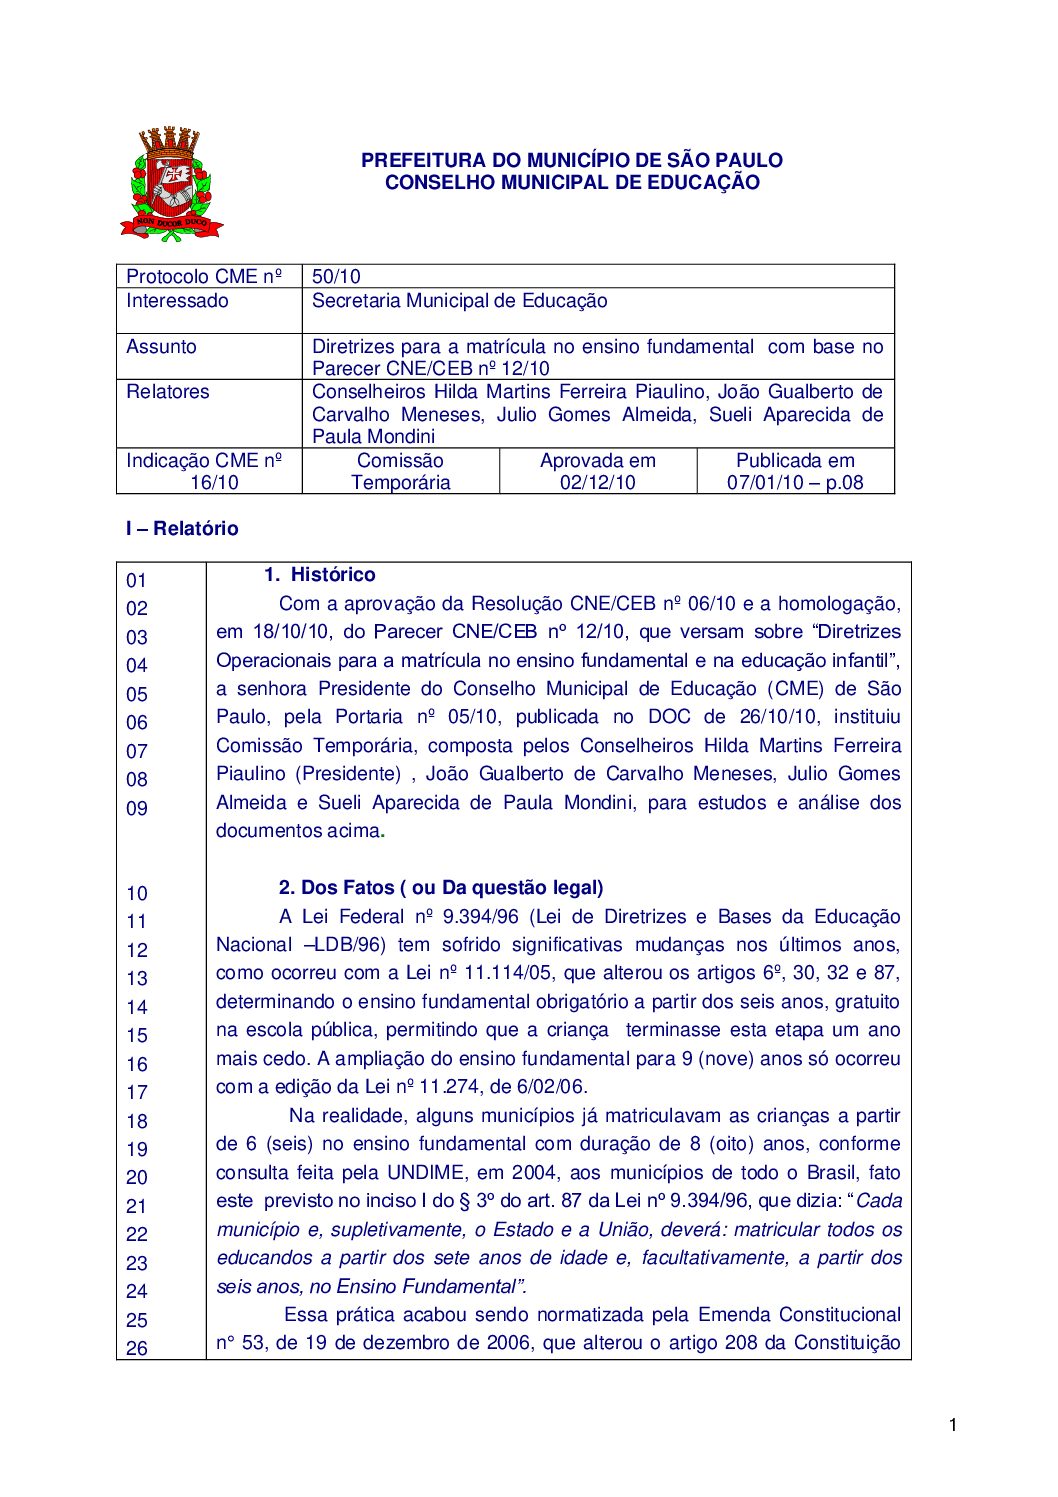 Indicação CME nº 16/2010 - Diretrizes para a matrícula no ensino fundamental com base no Parecer CNE/CEB nº 12/2010